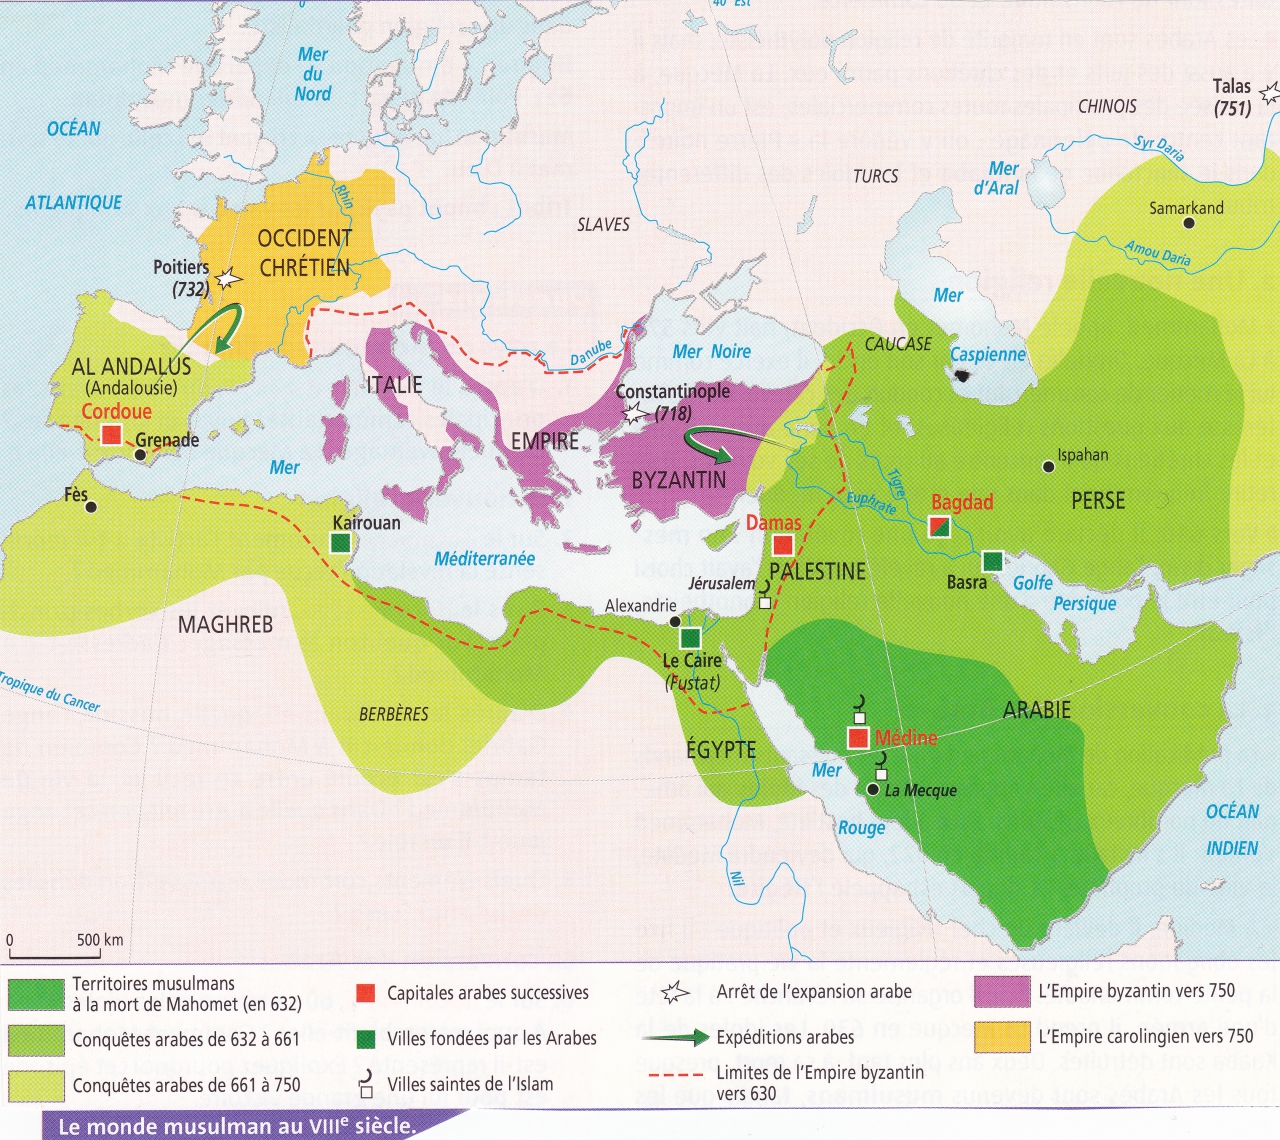 carte monde musulman moyen age Le monde musulman au VIIIe siècle (Carte)   Une autre histoire